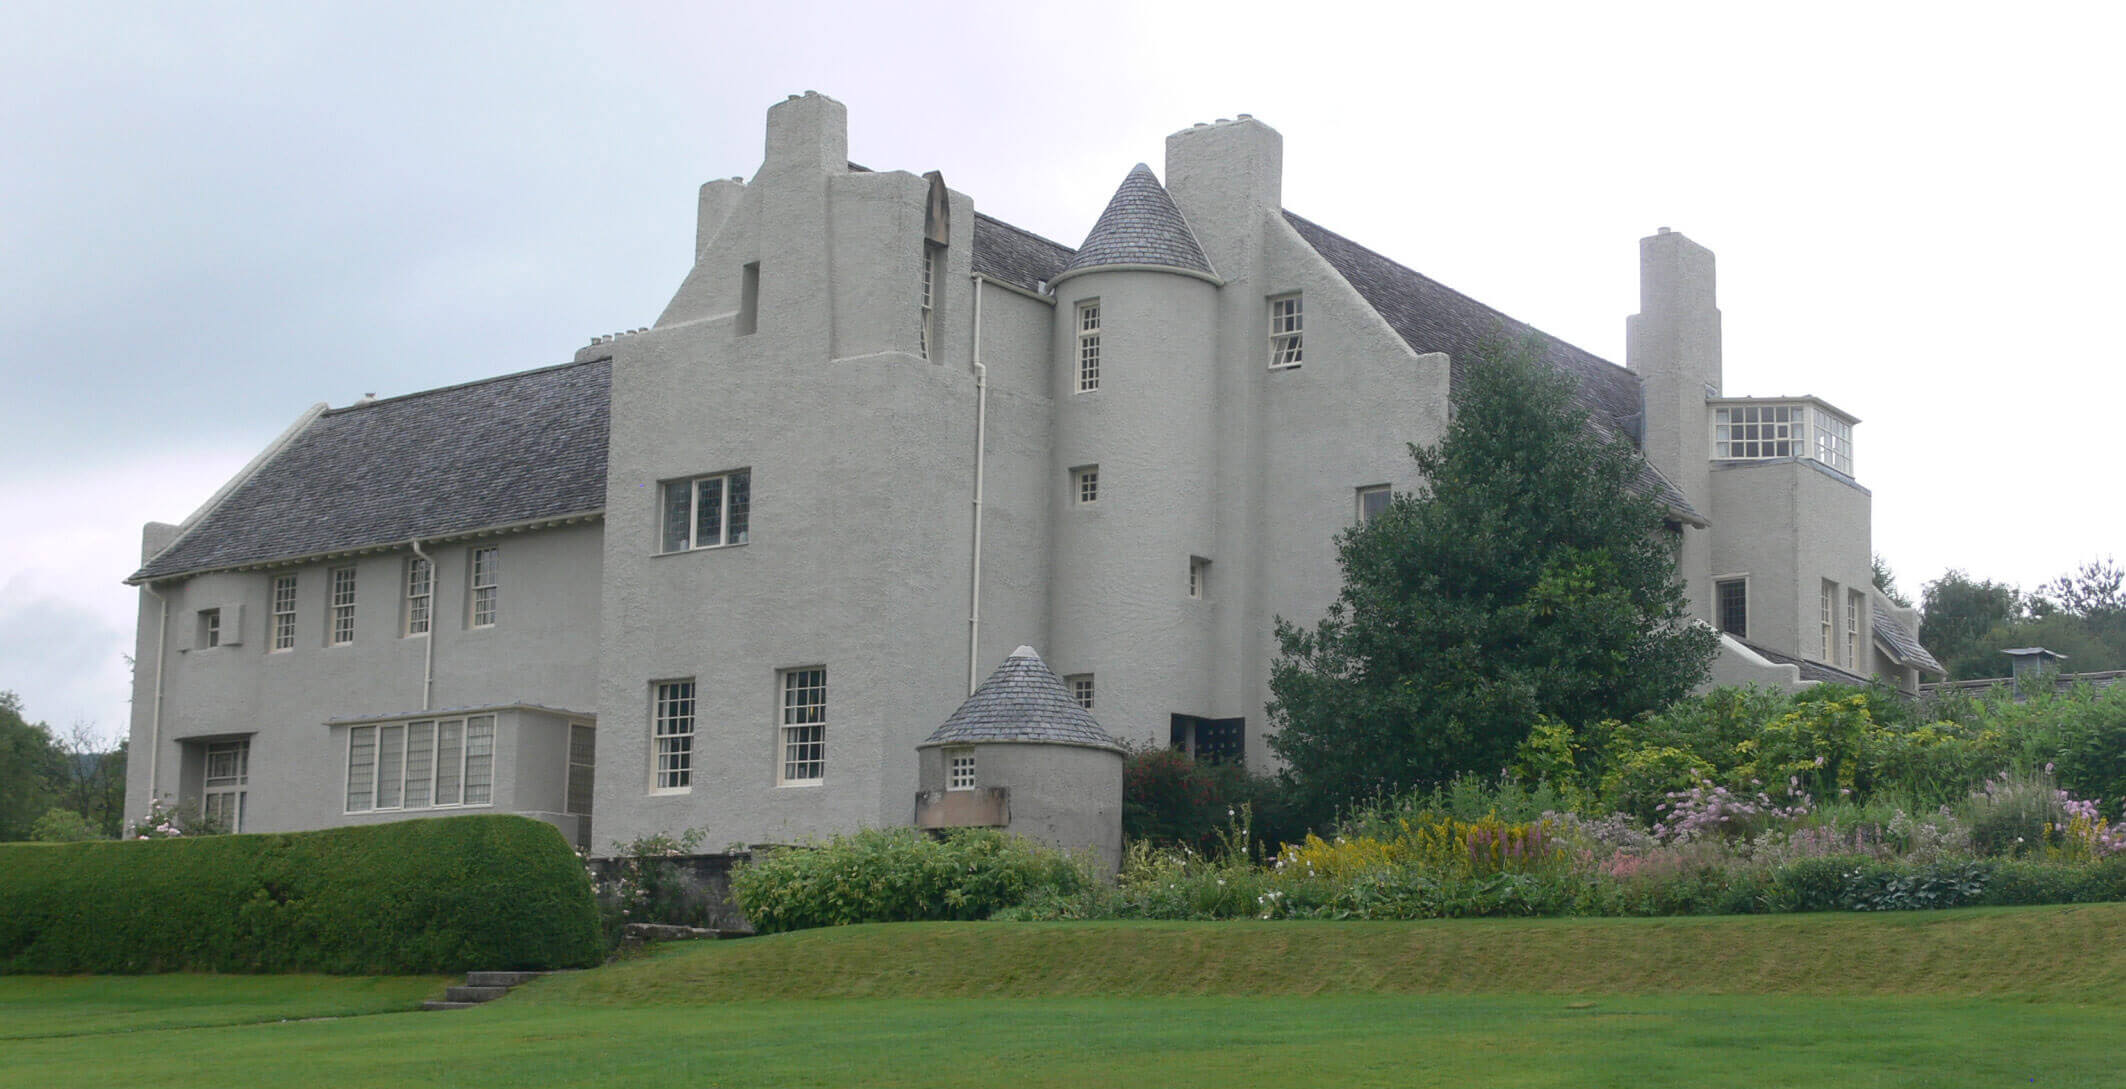 Hill House in Helensburg, Schottland, Charles Rennie Mackintosh